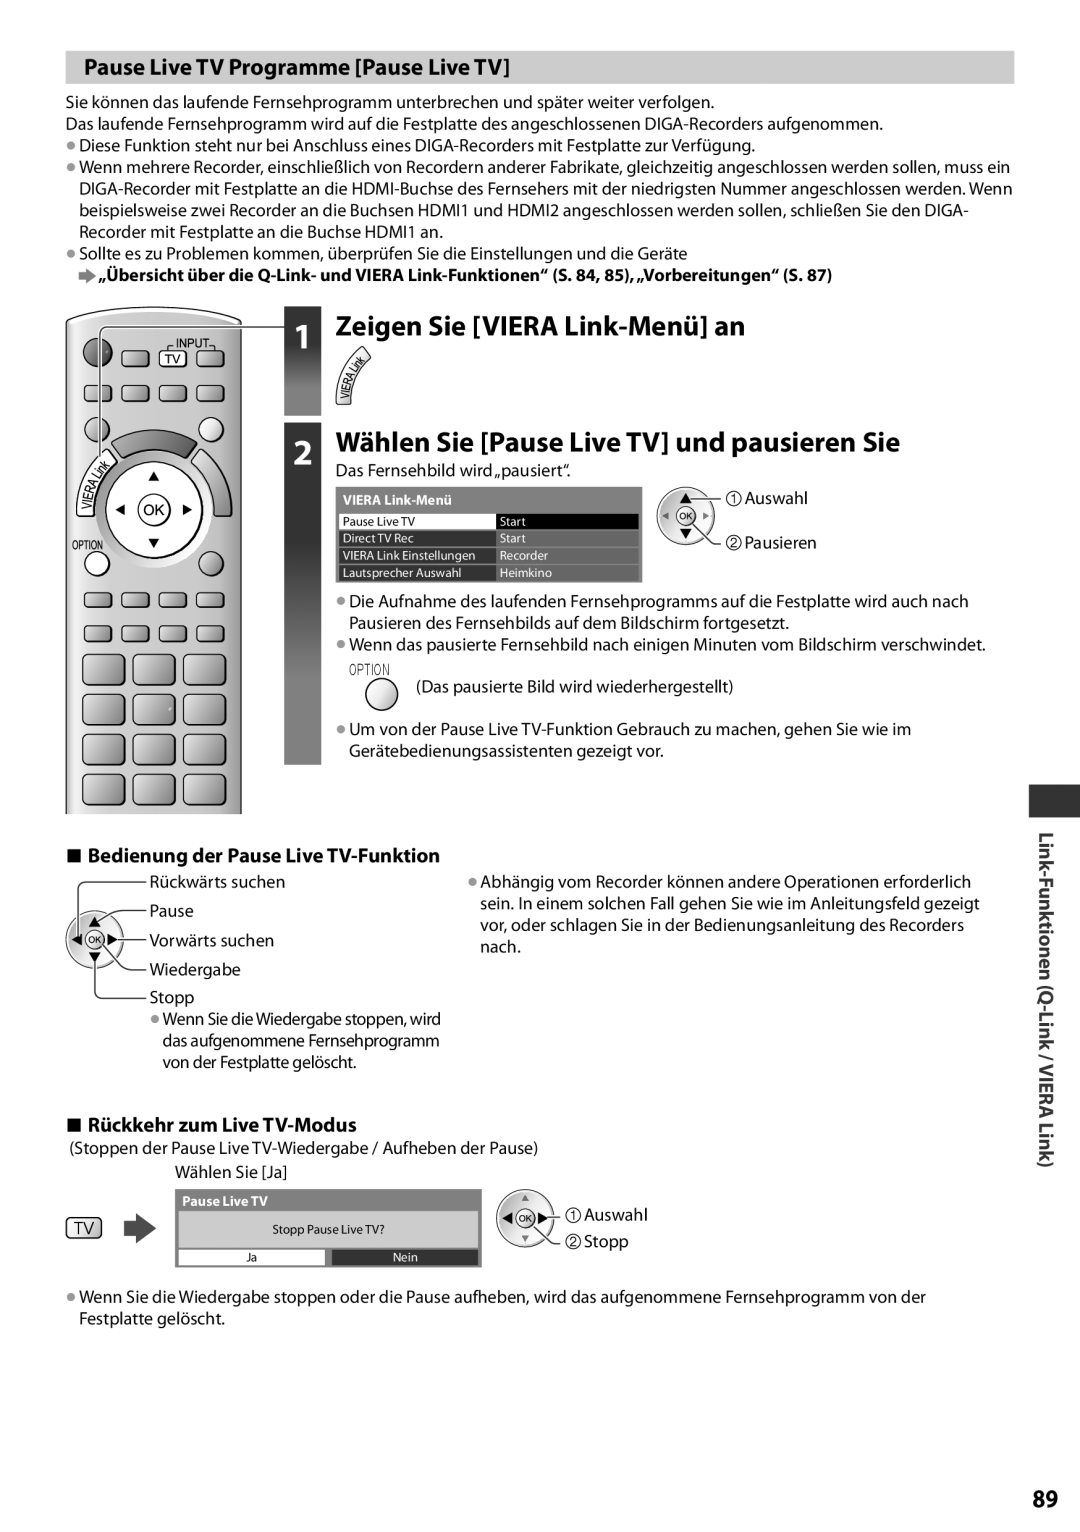 Panasonic TX-L37EF32 Zeigen Sie VIERA Link-Menü an, Wählen Sie Pause Live TV und pausieren Sie, Rückkehr zum Live TV-Modus 